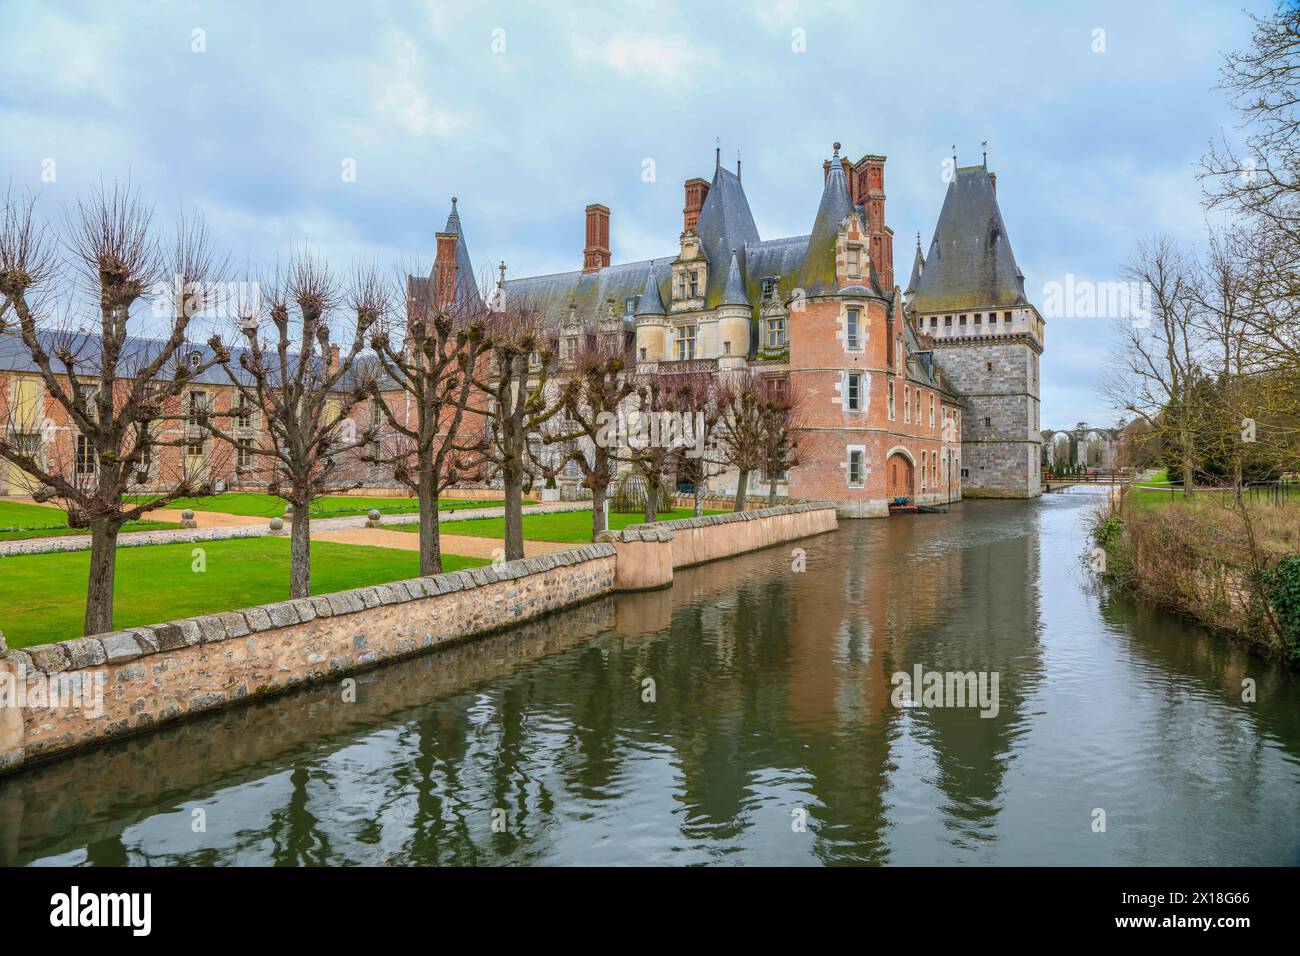 Chateau de Maintenon sul fiume Eure, dipartimento Eure-et-Loir, regione Centre-Val de Loire, Francia Foto Stock